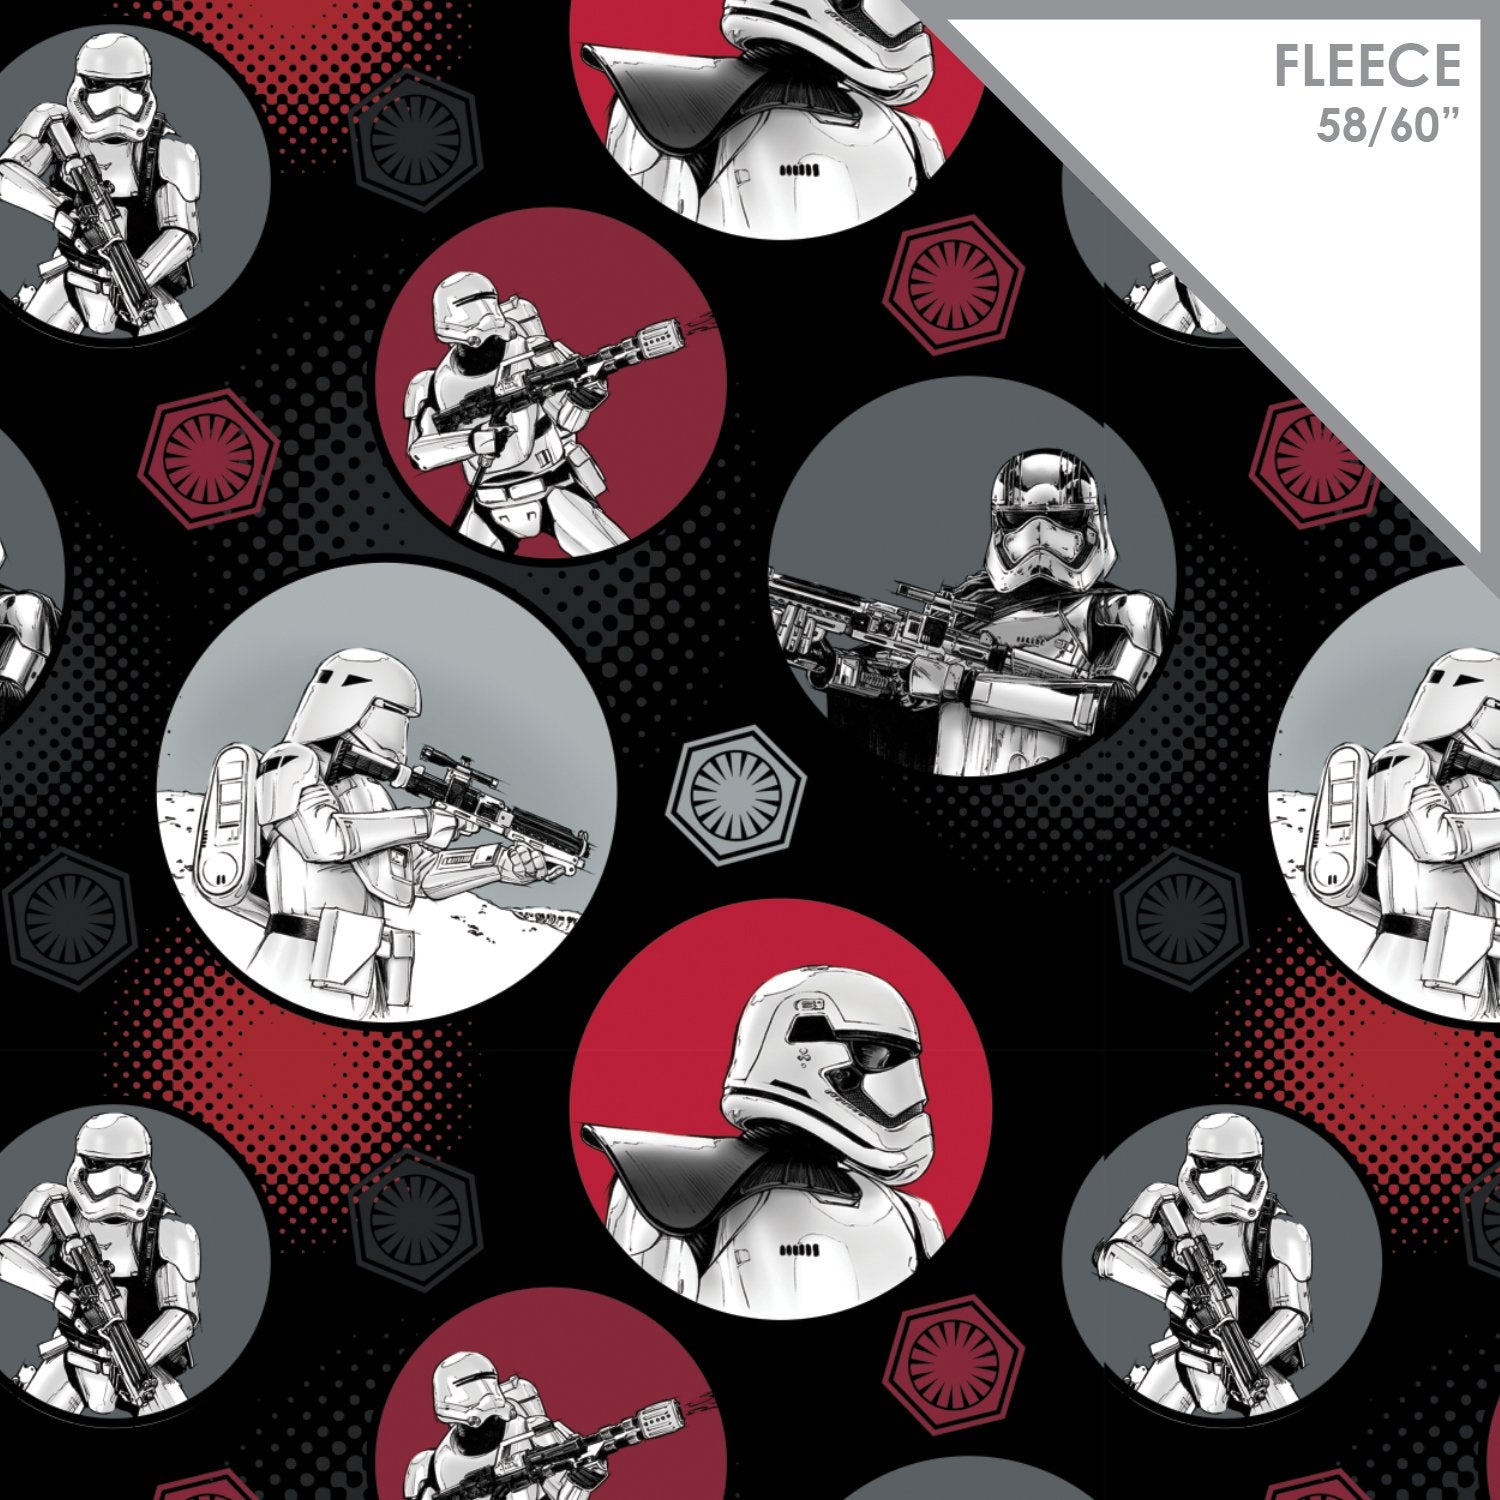 Star Wars VII - Stormtroopers In Circles - Printed Fleece by Lucasfilm Star Wars